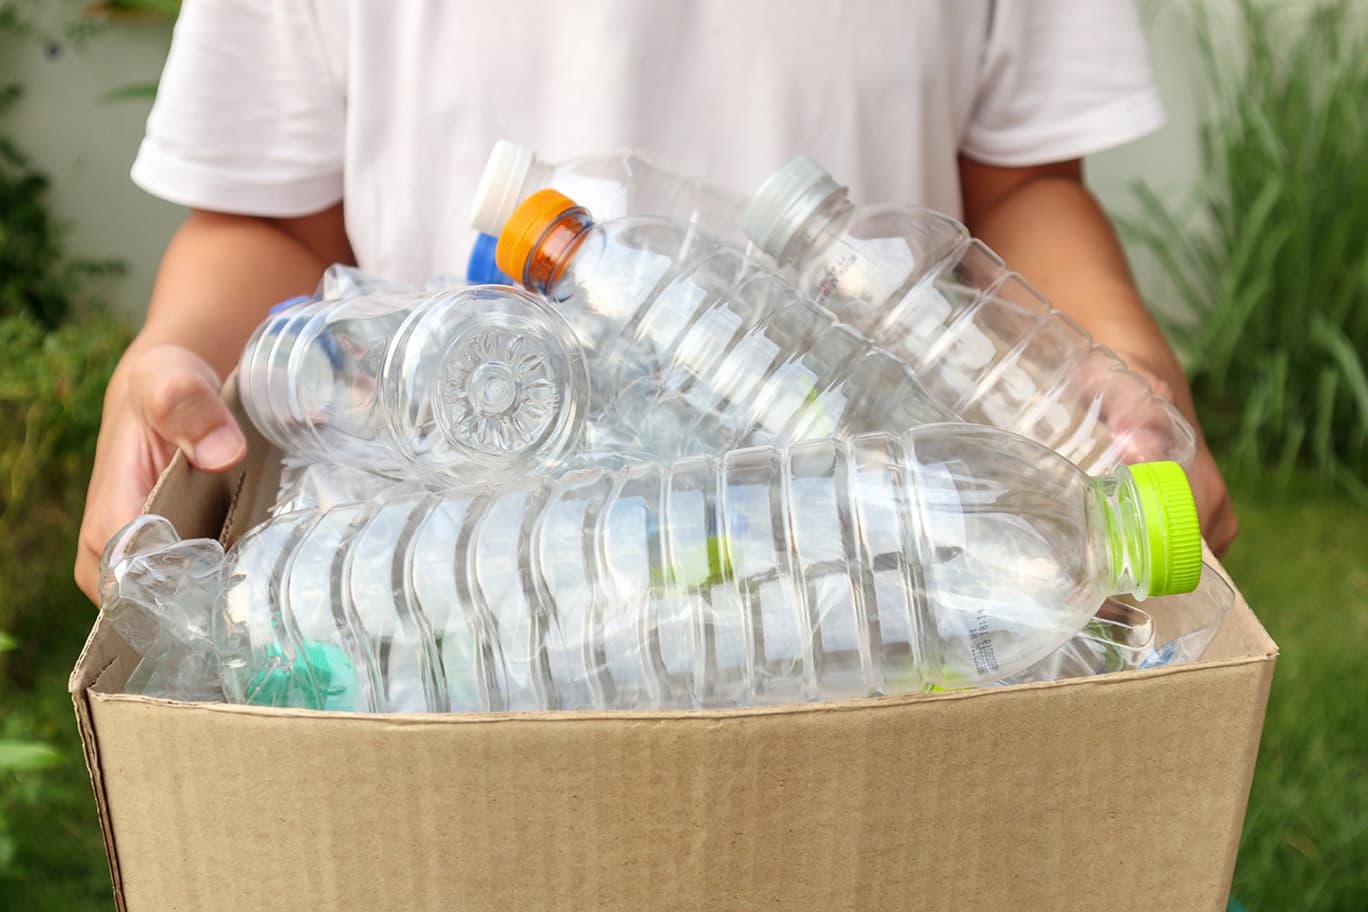 Kind sammelt Plastikflaschen in einem Karton.